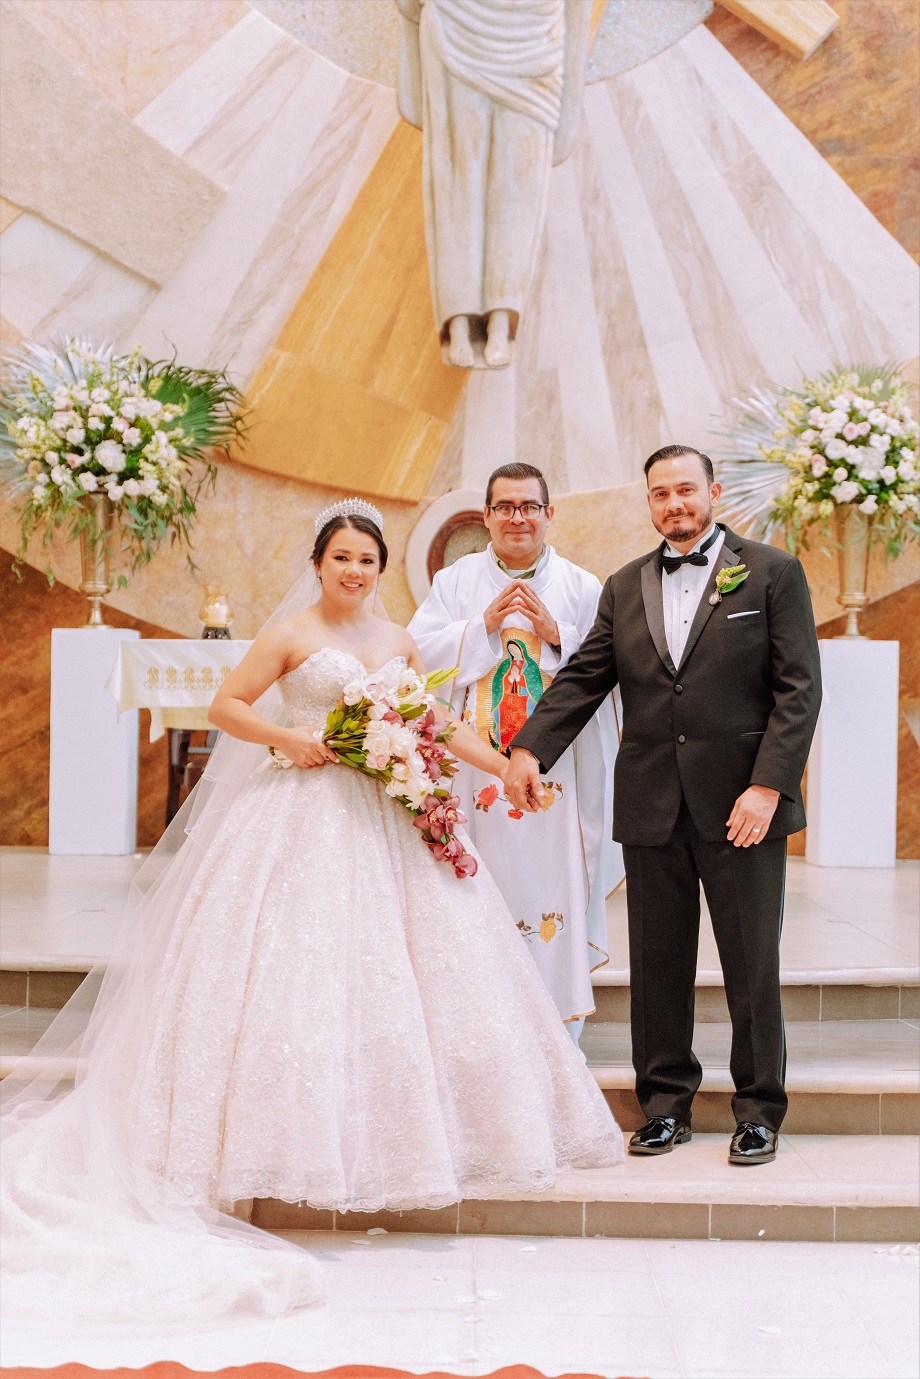 La boda de Héctor Luis Ponce y Patricia Jackeline Interiano… una bella historia de amor